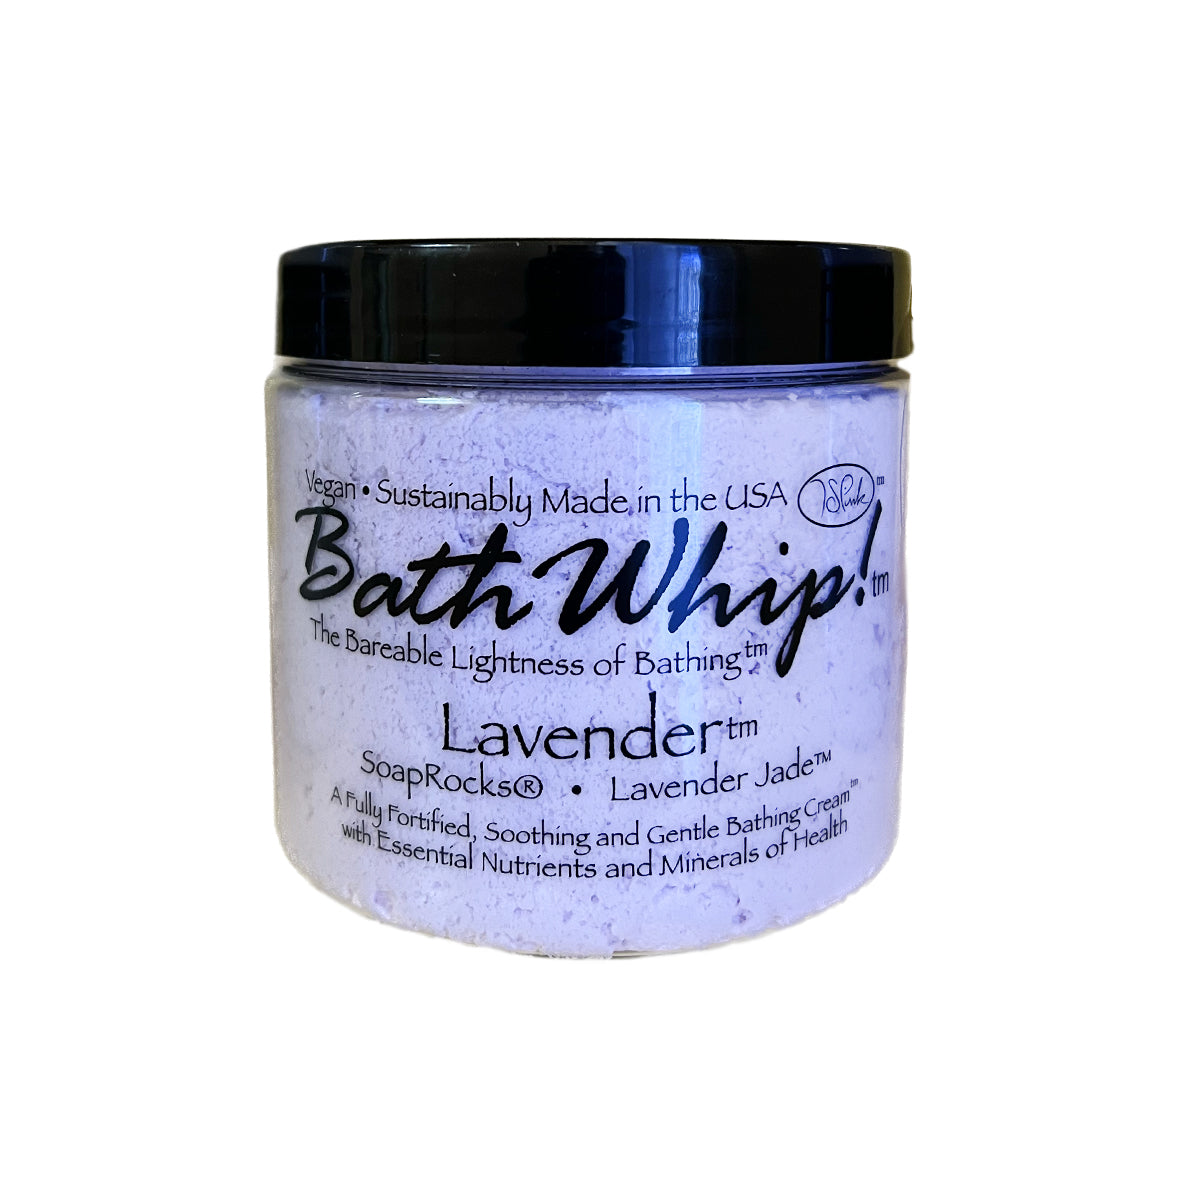 SoapRocks - Lavender Jade Bath Whip